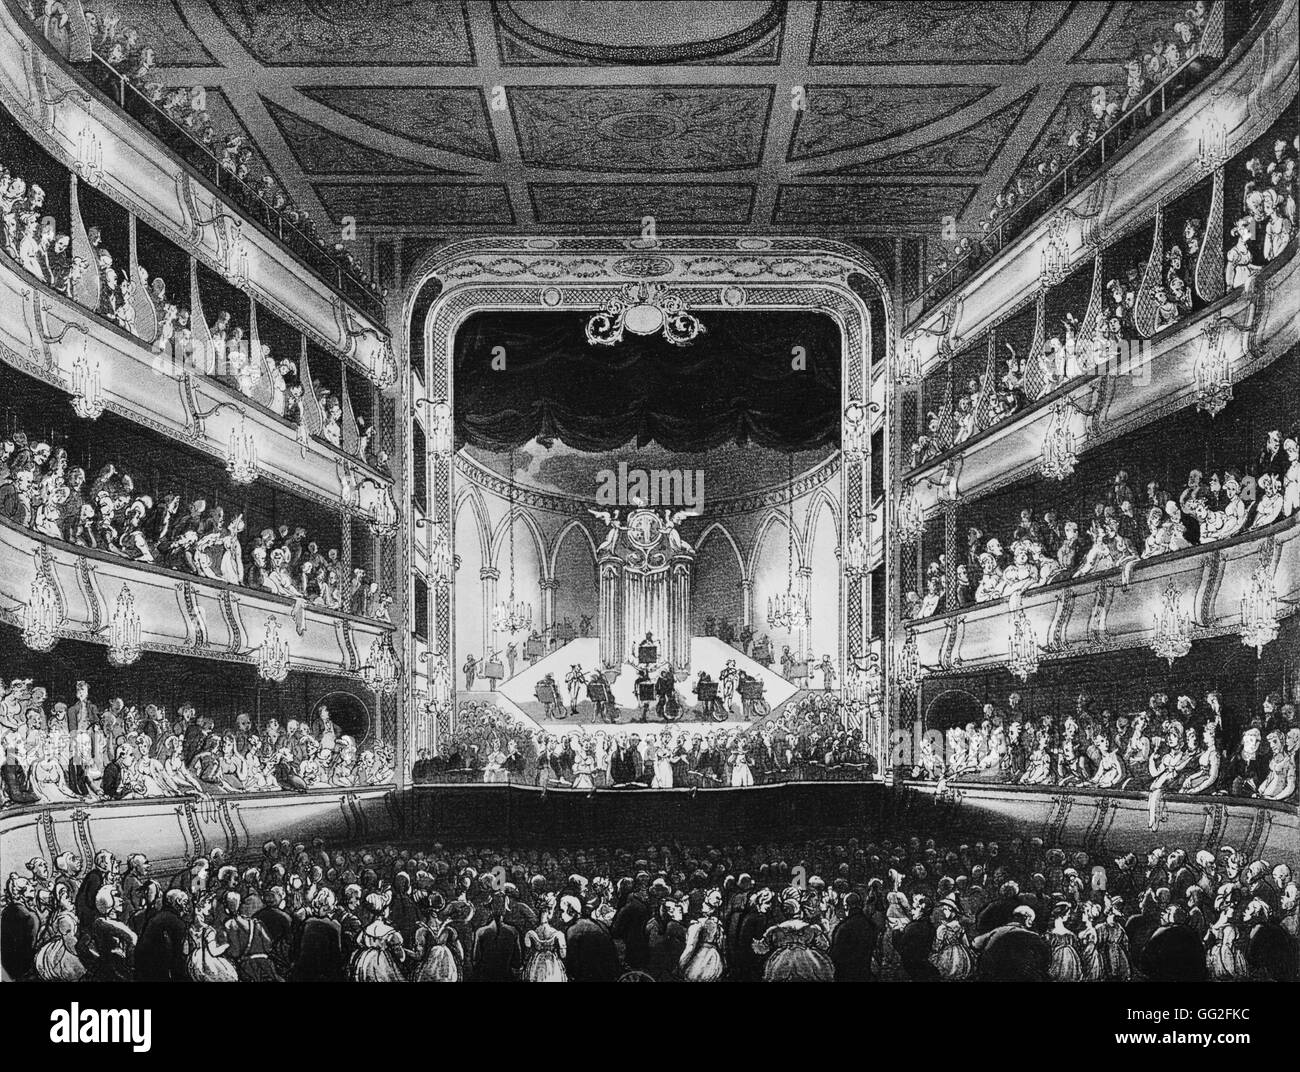 Thomas ROWLANDSON English shcool la Royal Opera House à Londres, également connu sous le nom de Covent Garden Theatre, nommé d'après le quartier où il est situé 1808 Gravure Banque D'Images